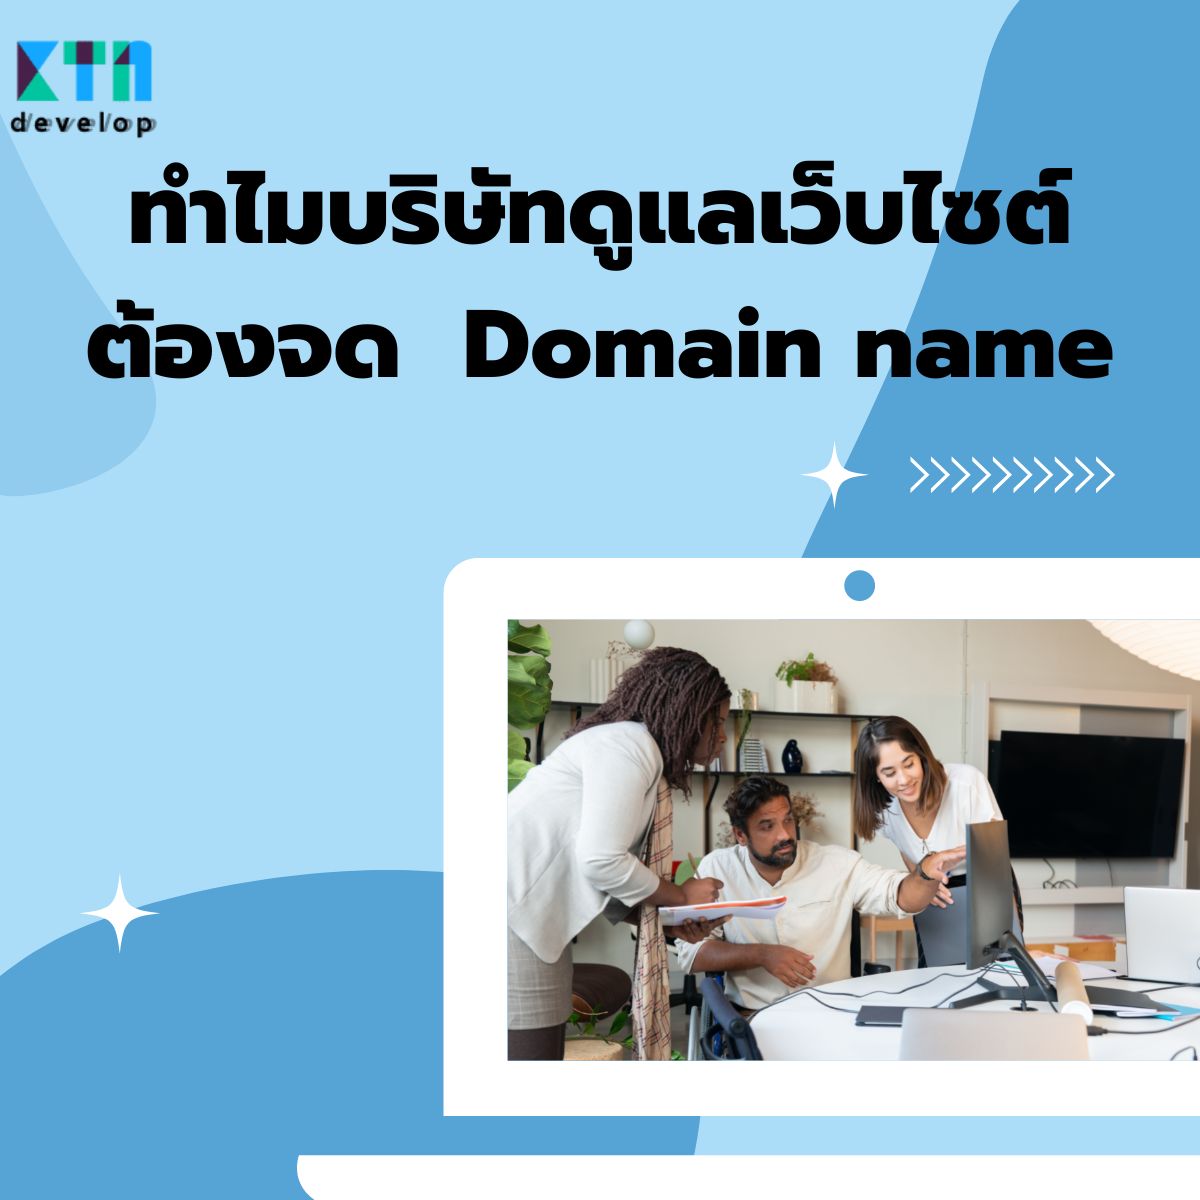 ทำไมบริษัทดูแลเว็บไซต์ต้องจด Domain name